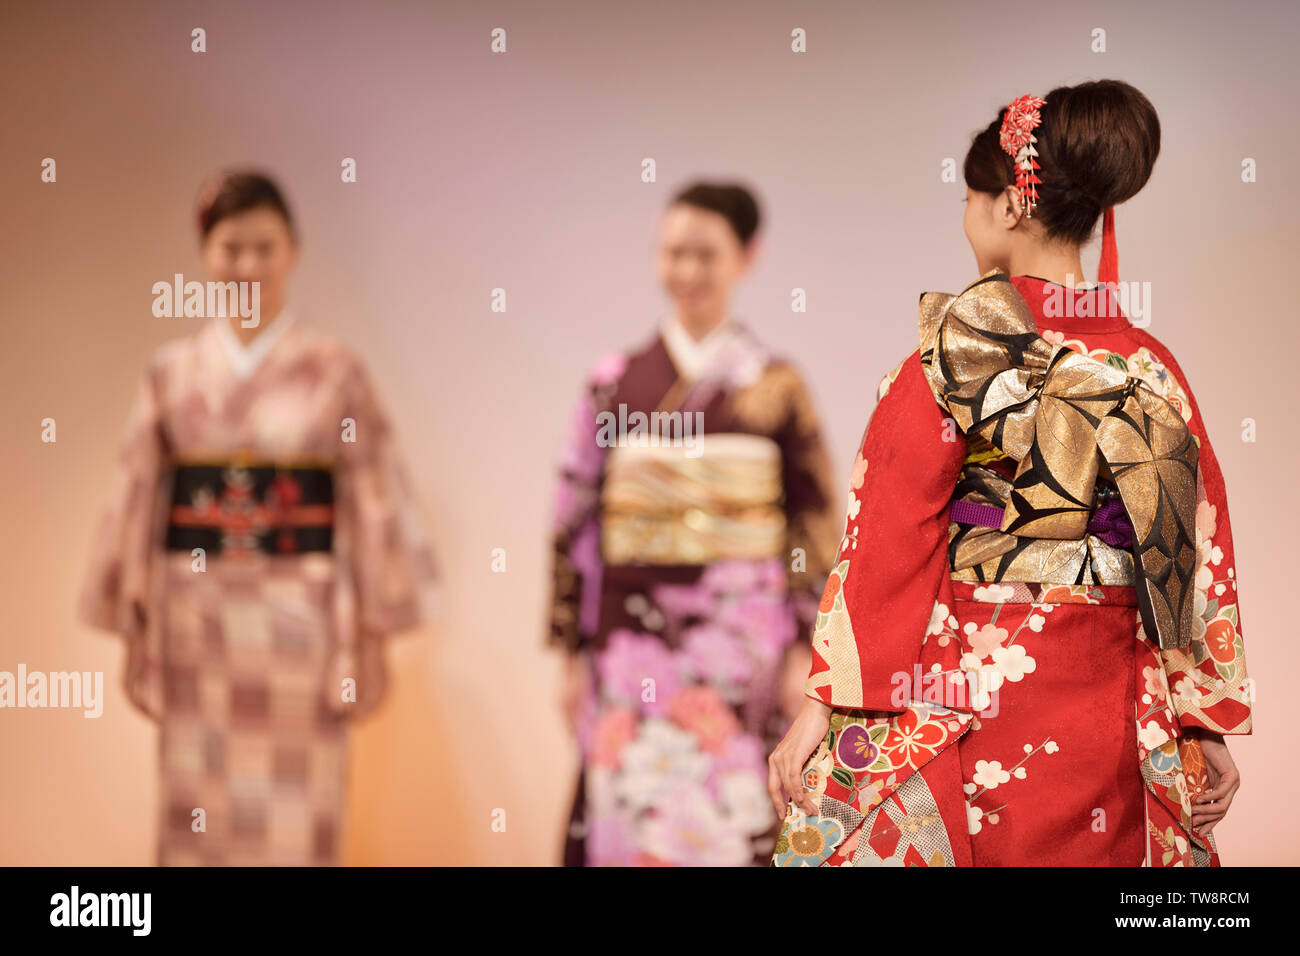 Licenza disponibile su MaximImages.com - chiusura di un intricato design di cintura kimono obi in rosso e oro. Donne giapponesi ad una sfilata di moda kimono Foto Stock